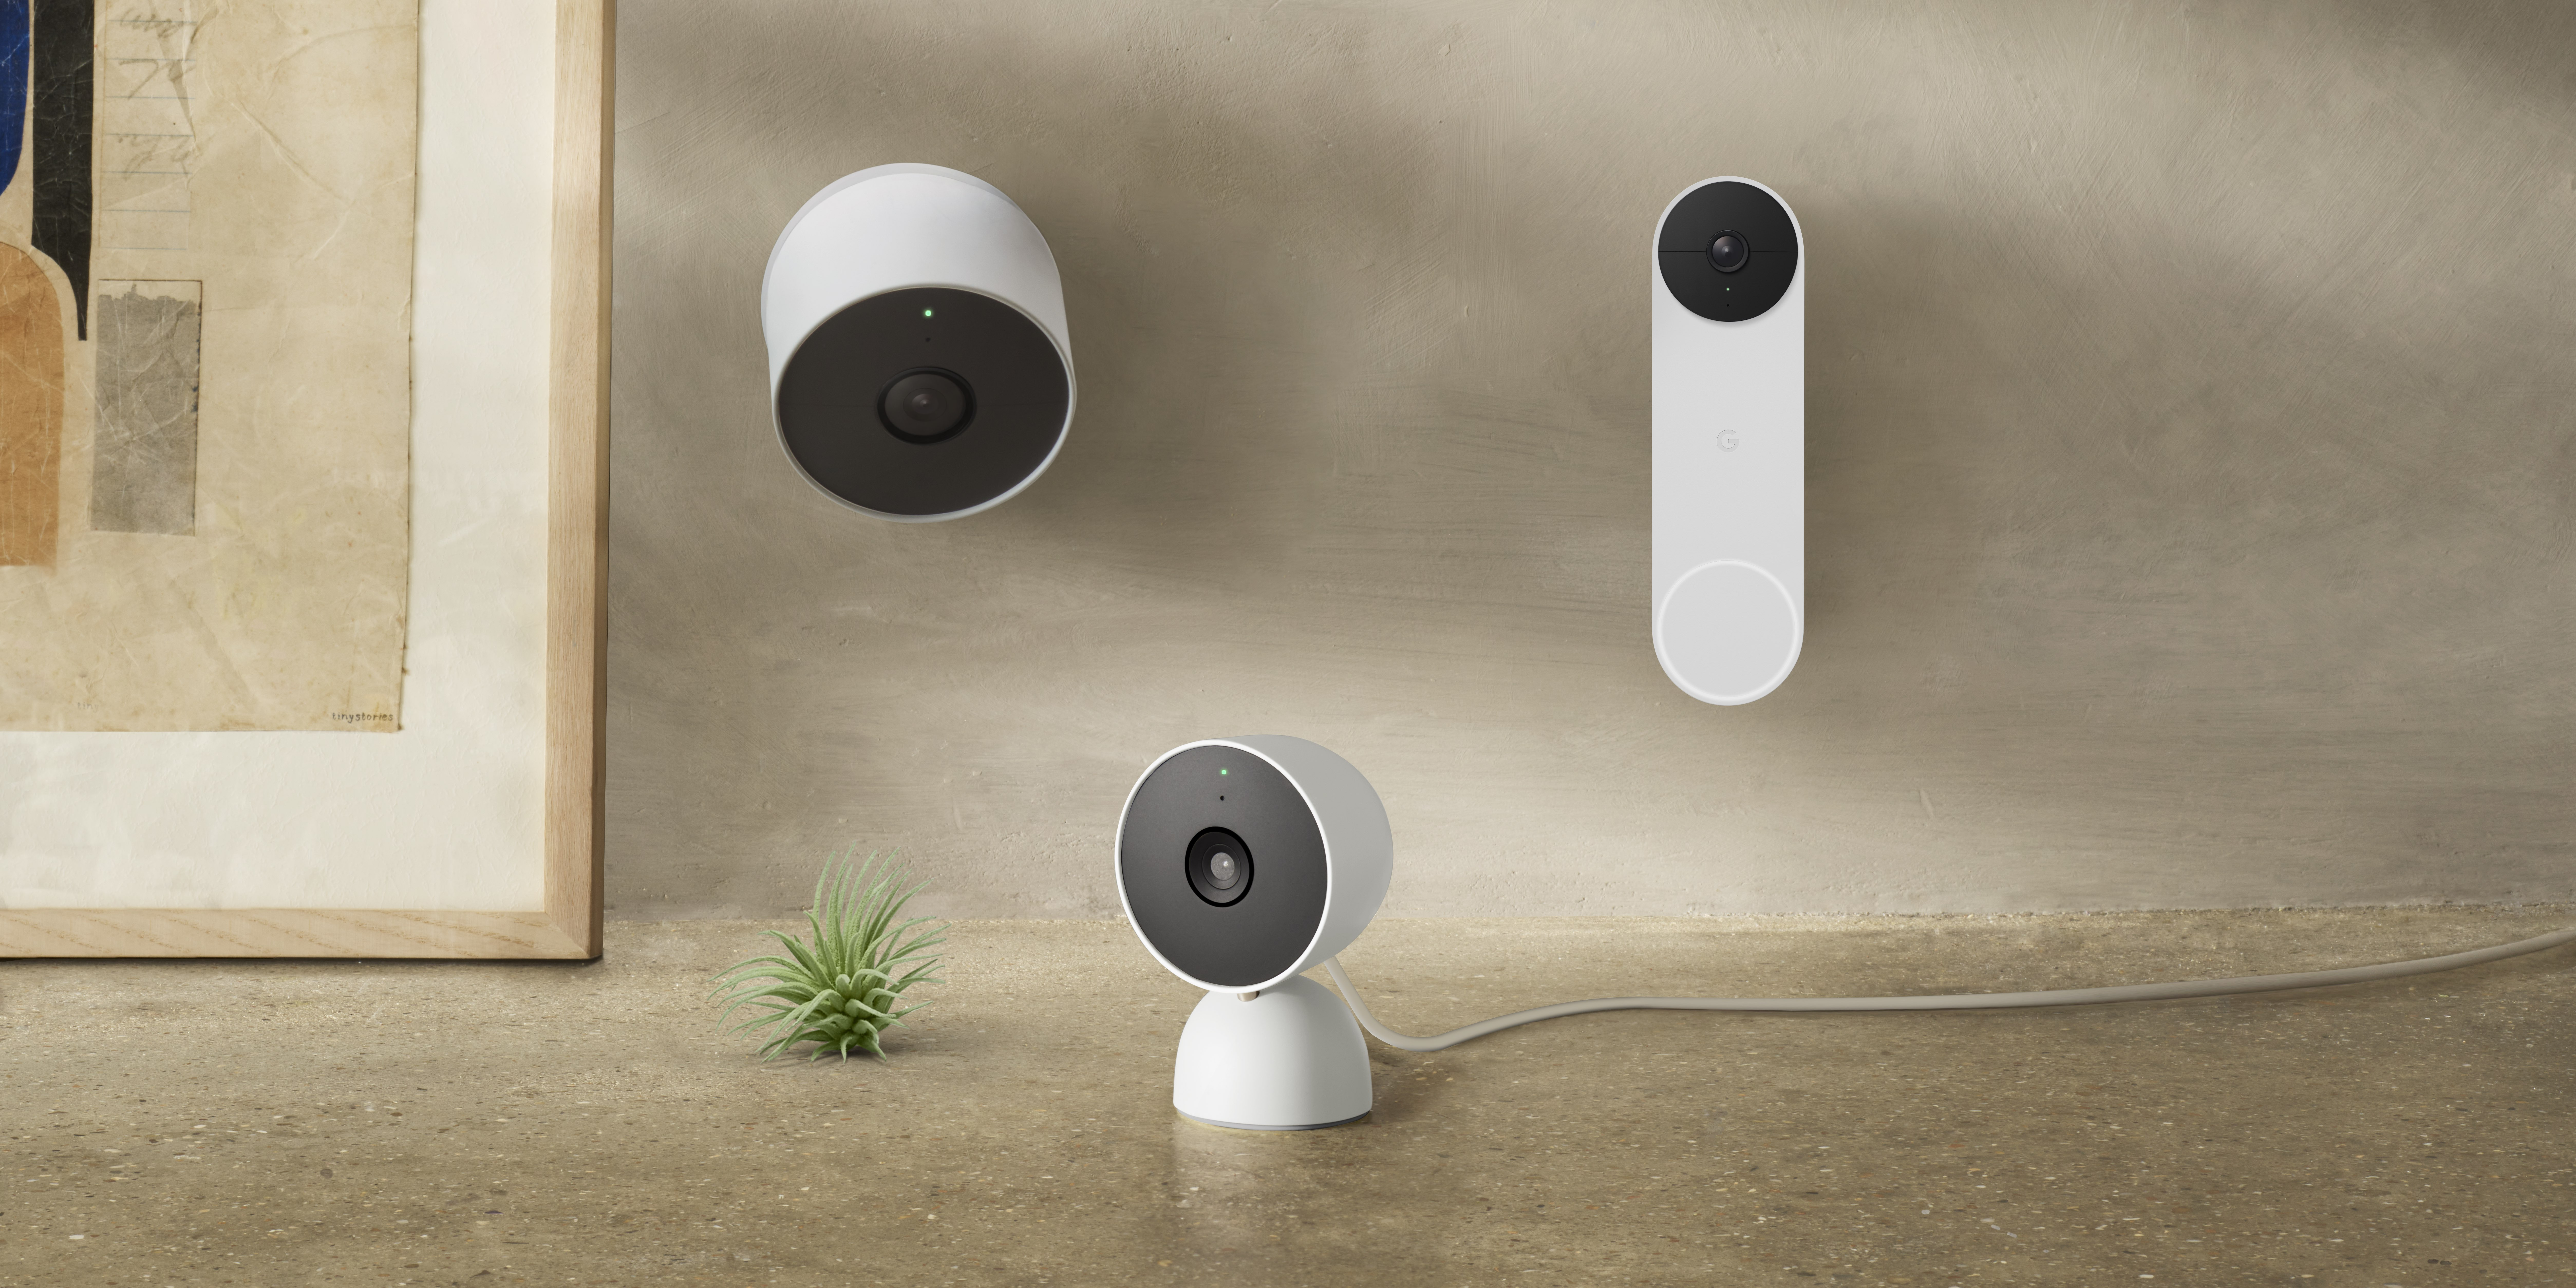 Neuigkeiten von Google Nest: Neue Nest Cams und Nest Doorbell sind da